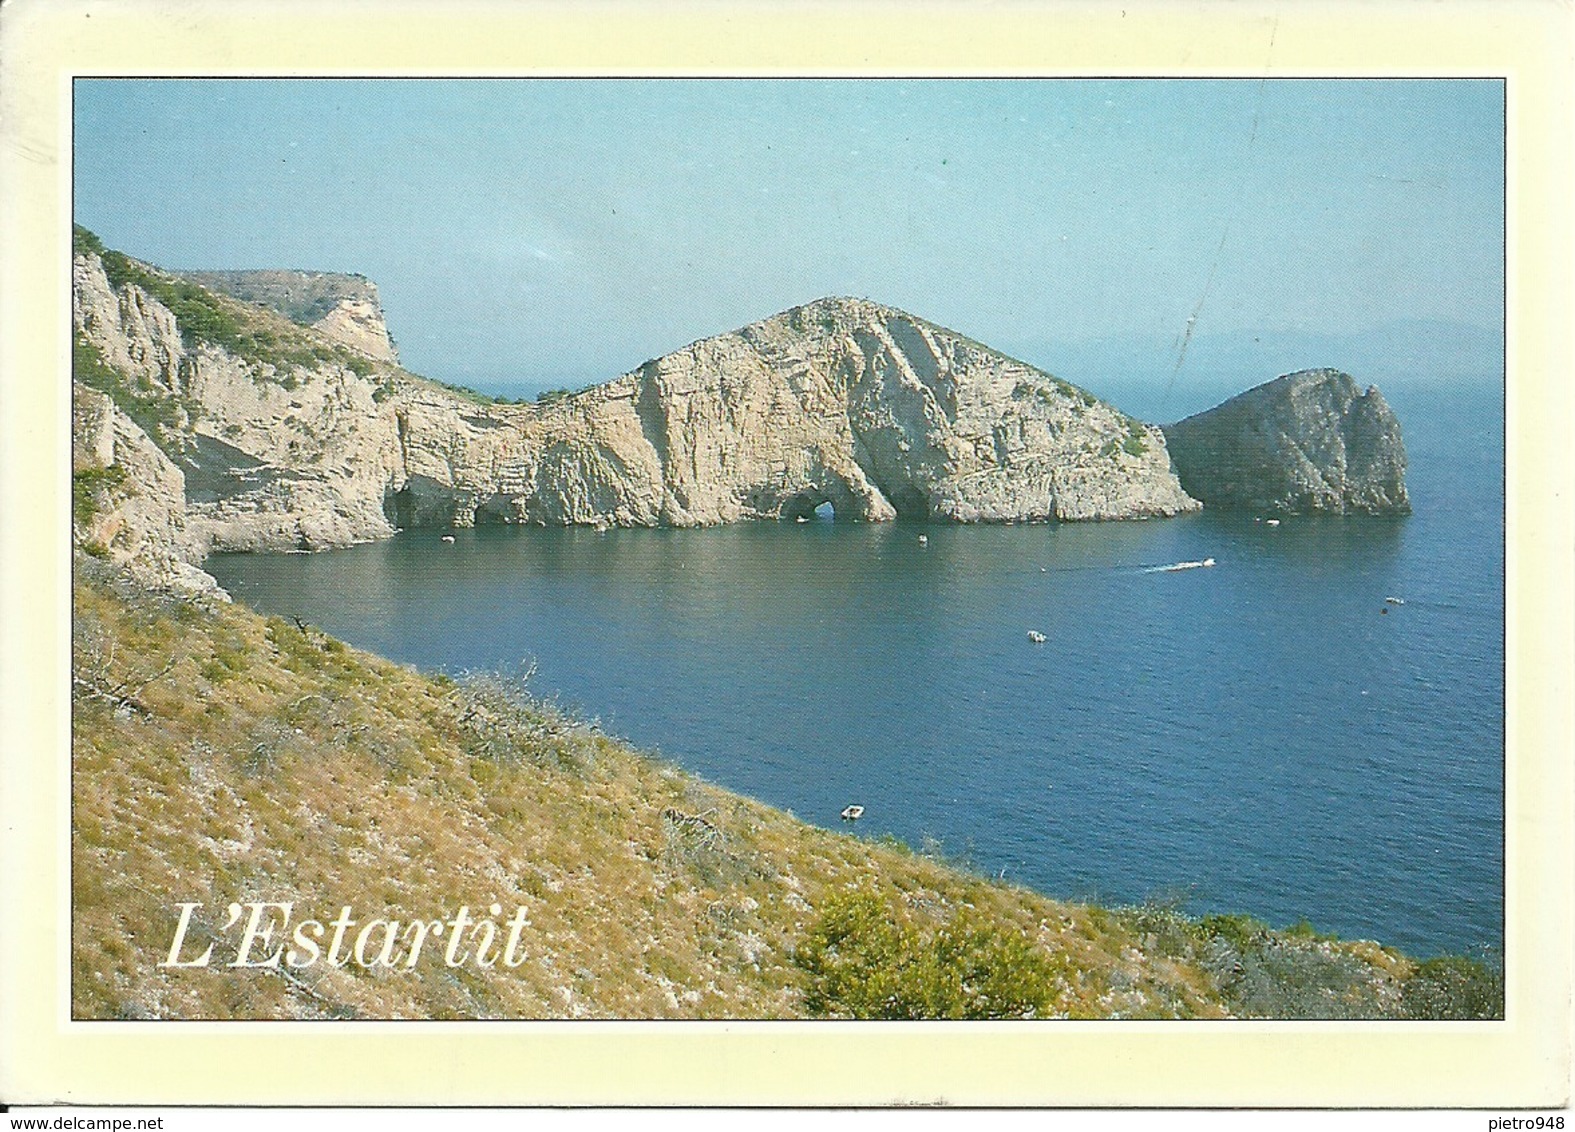 L'Estartit (Gerona, Spagna) Costa Brava, Roca Foradada, Stamp "Copa Del Rey 2000" - Gerona